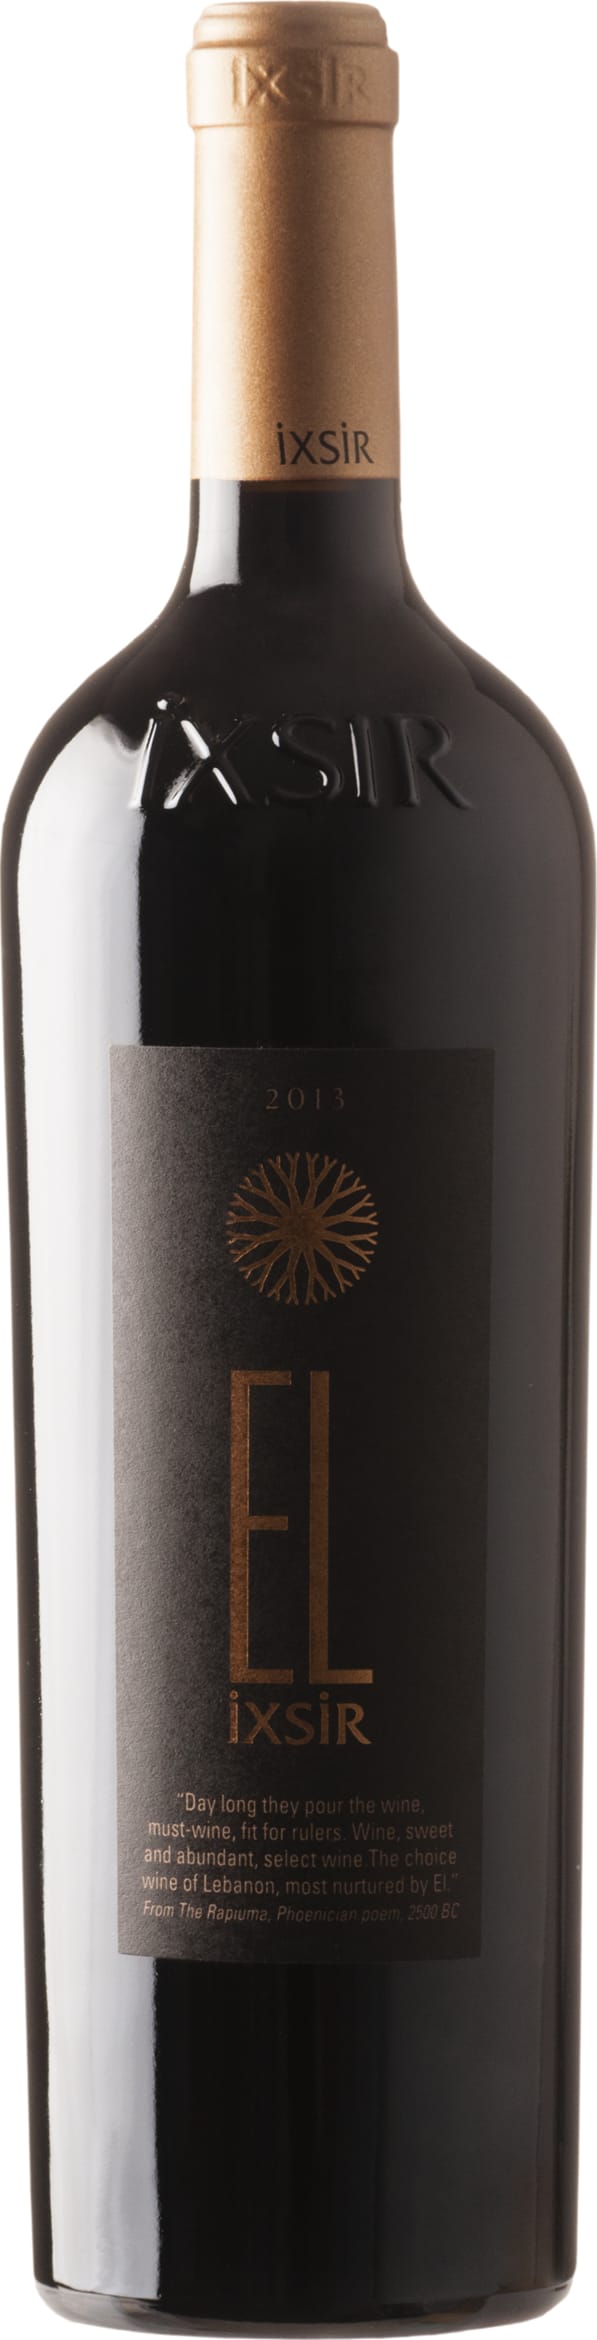 Ixsir El IXSIR 2015 75cl - Buy Ixsir Wines from GREAT WINES DIRECT wine shop